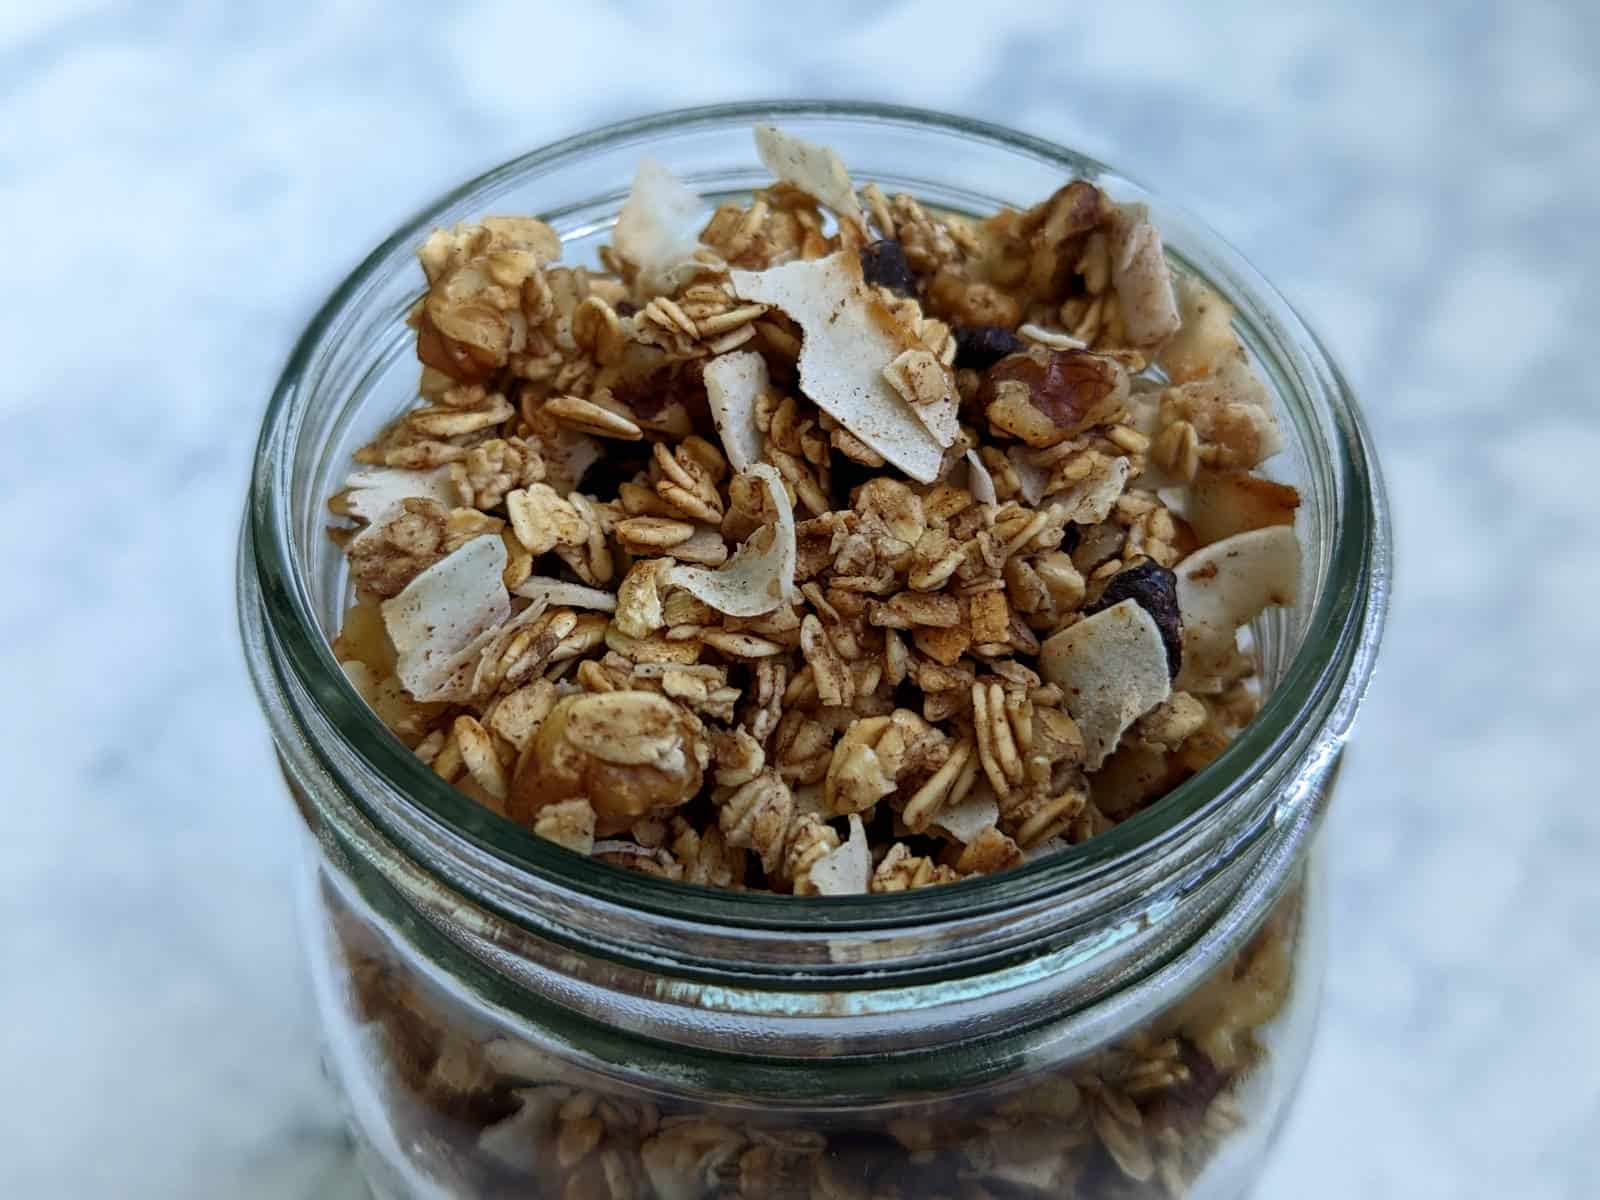 granola in a jar, close up